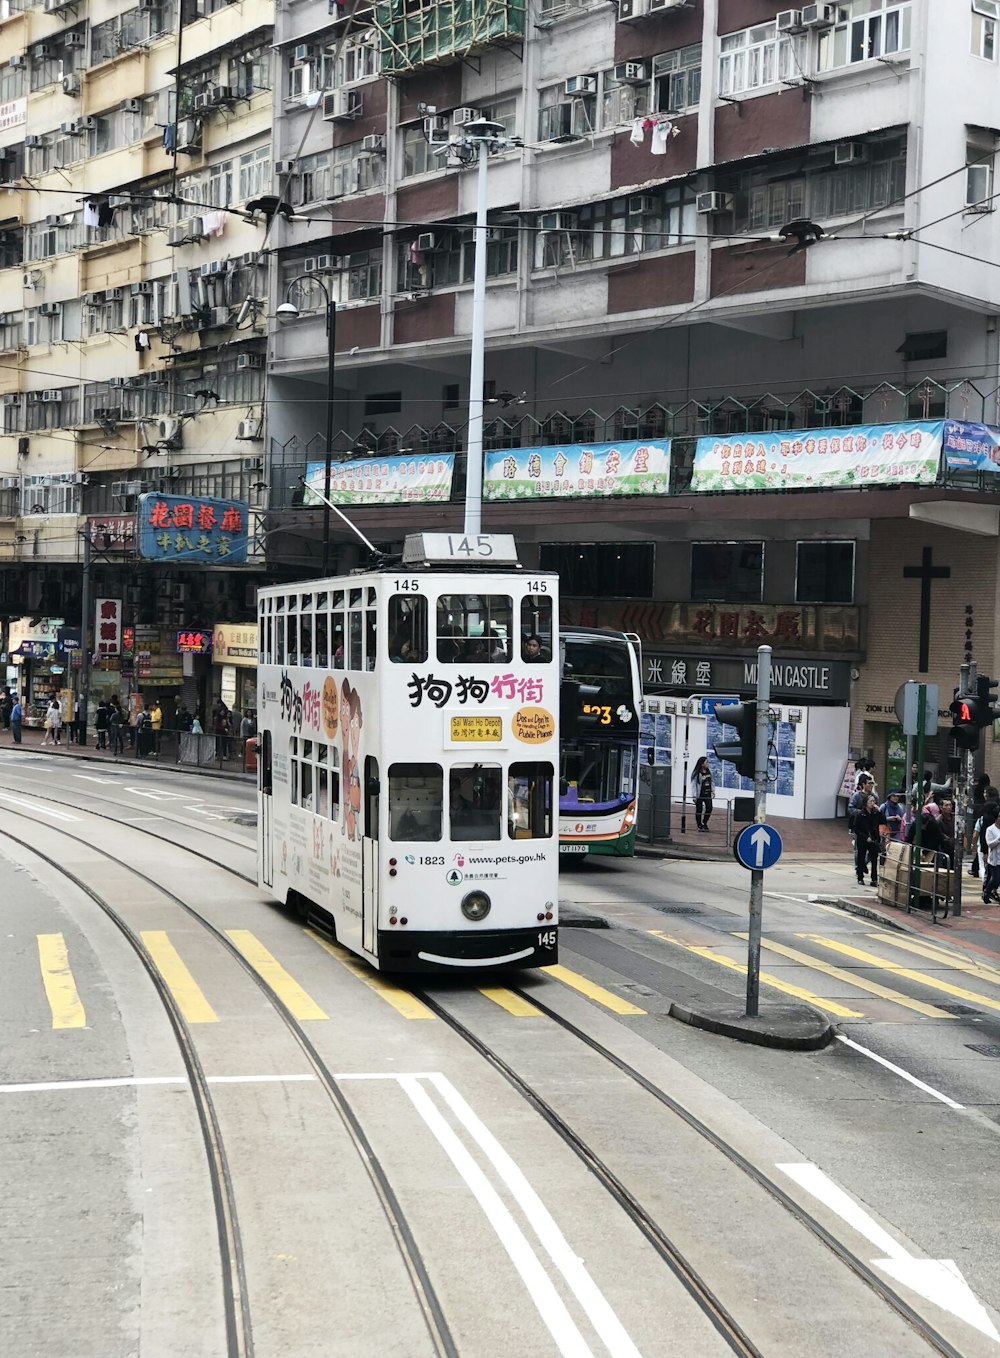 Bus à impériale blanc près d’un immeuble de grande hauteur blanc et brun pendant la journée